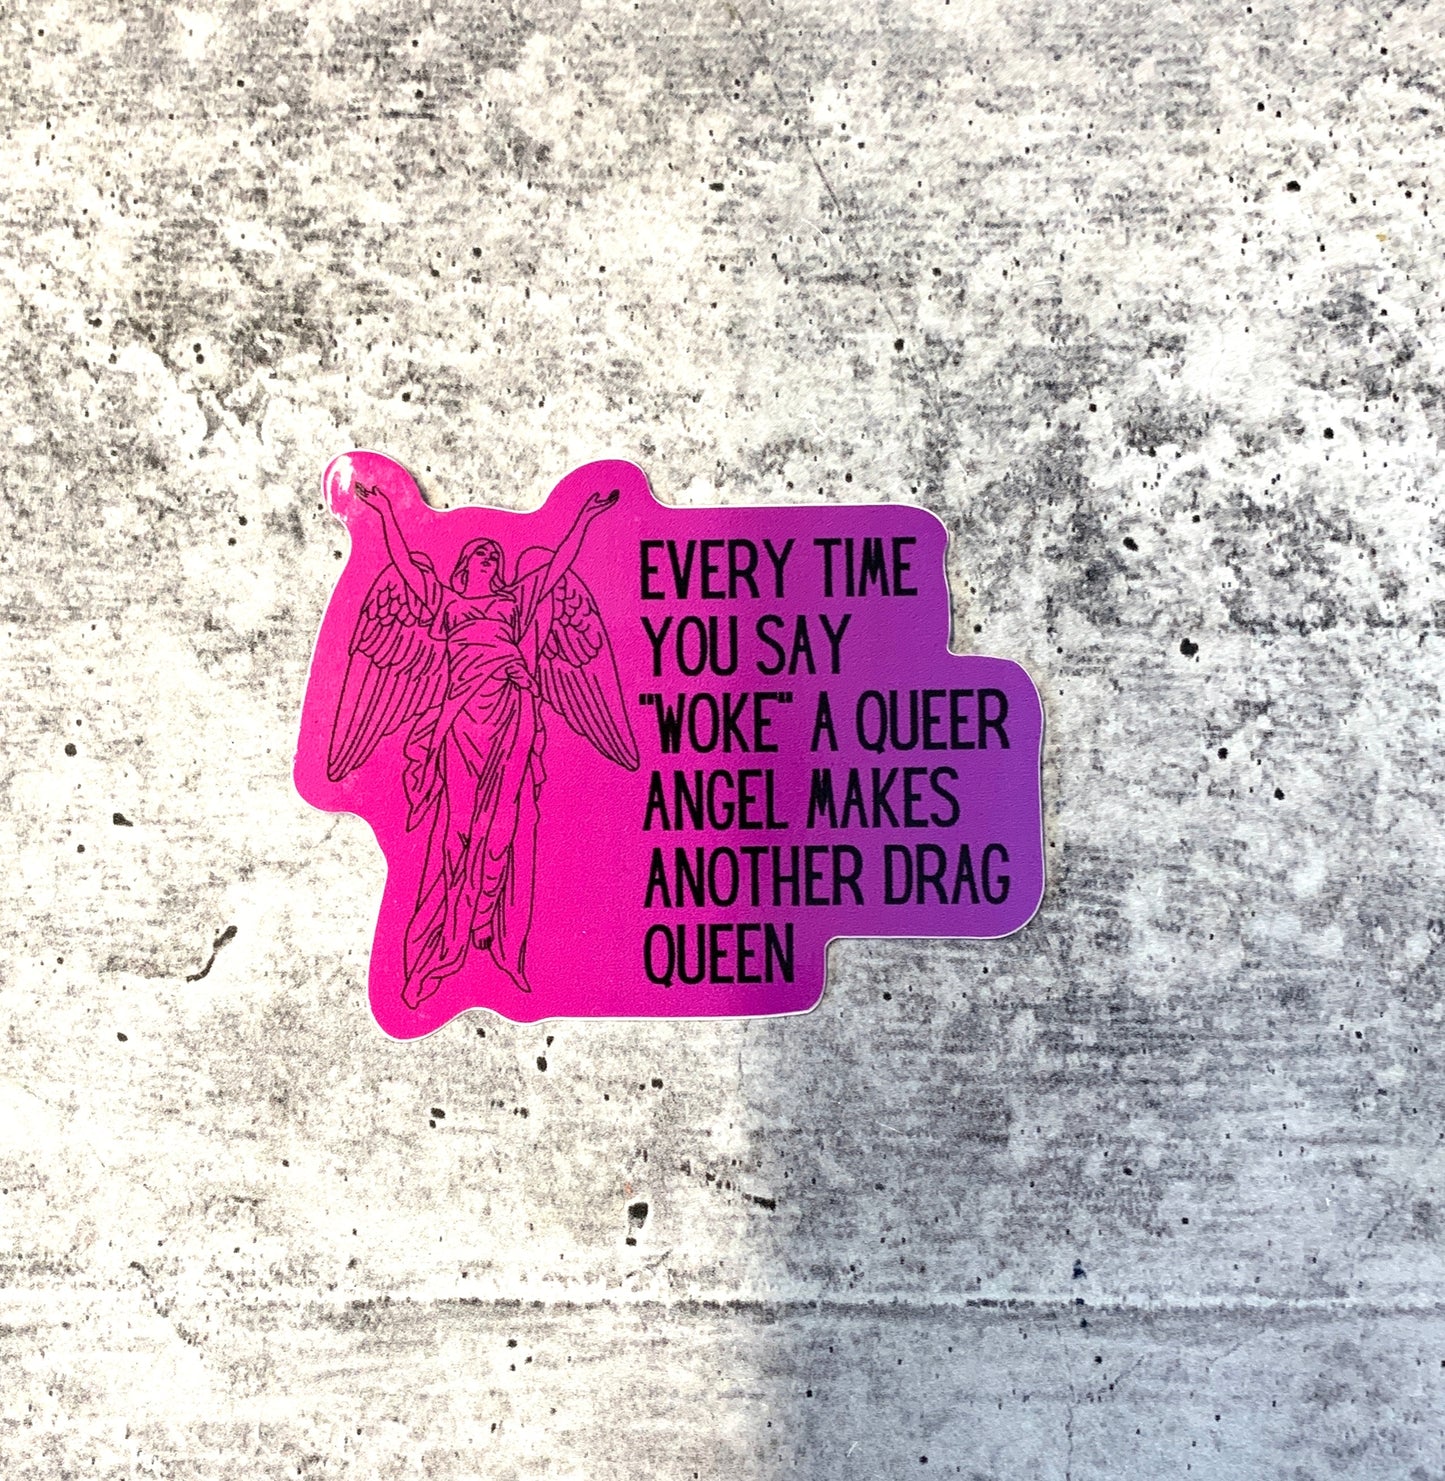 Woke Queer Angel Drag Queen Sticker